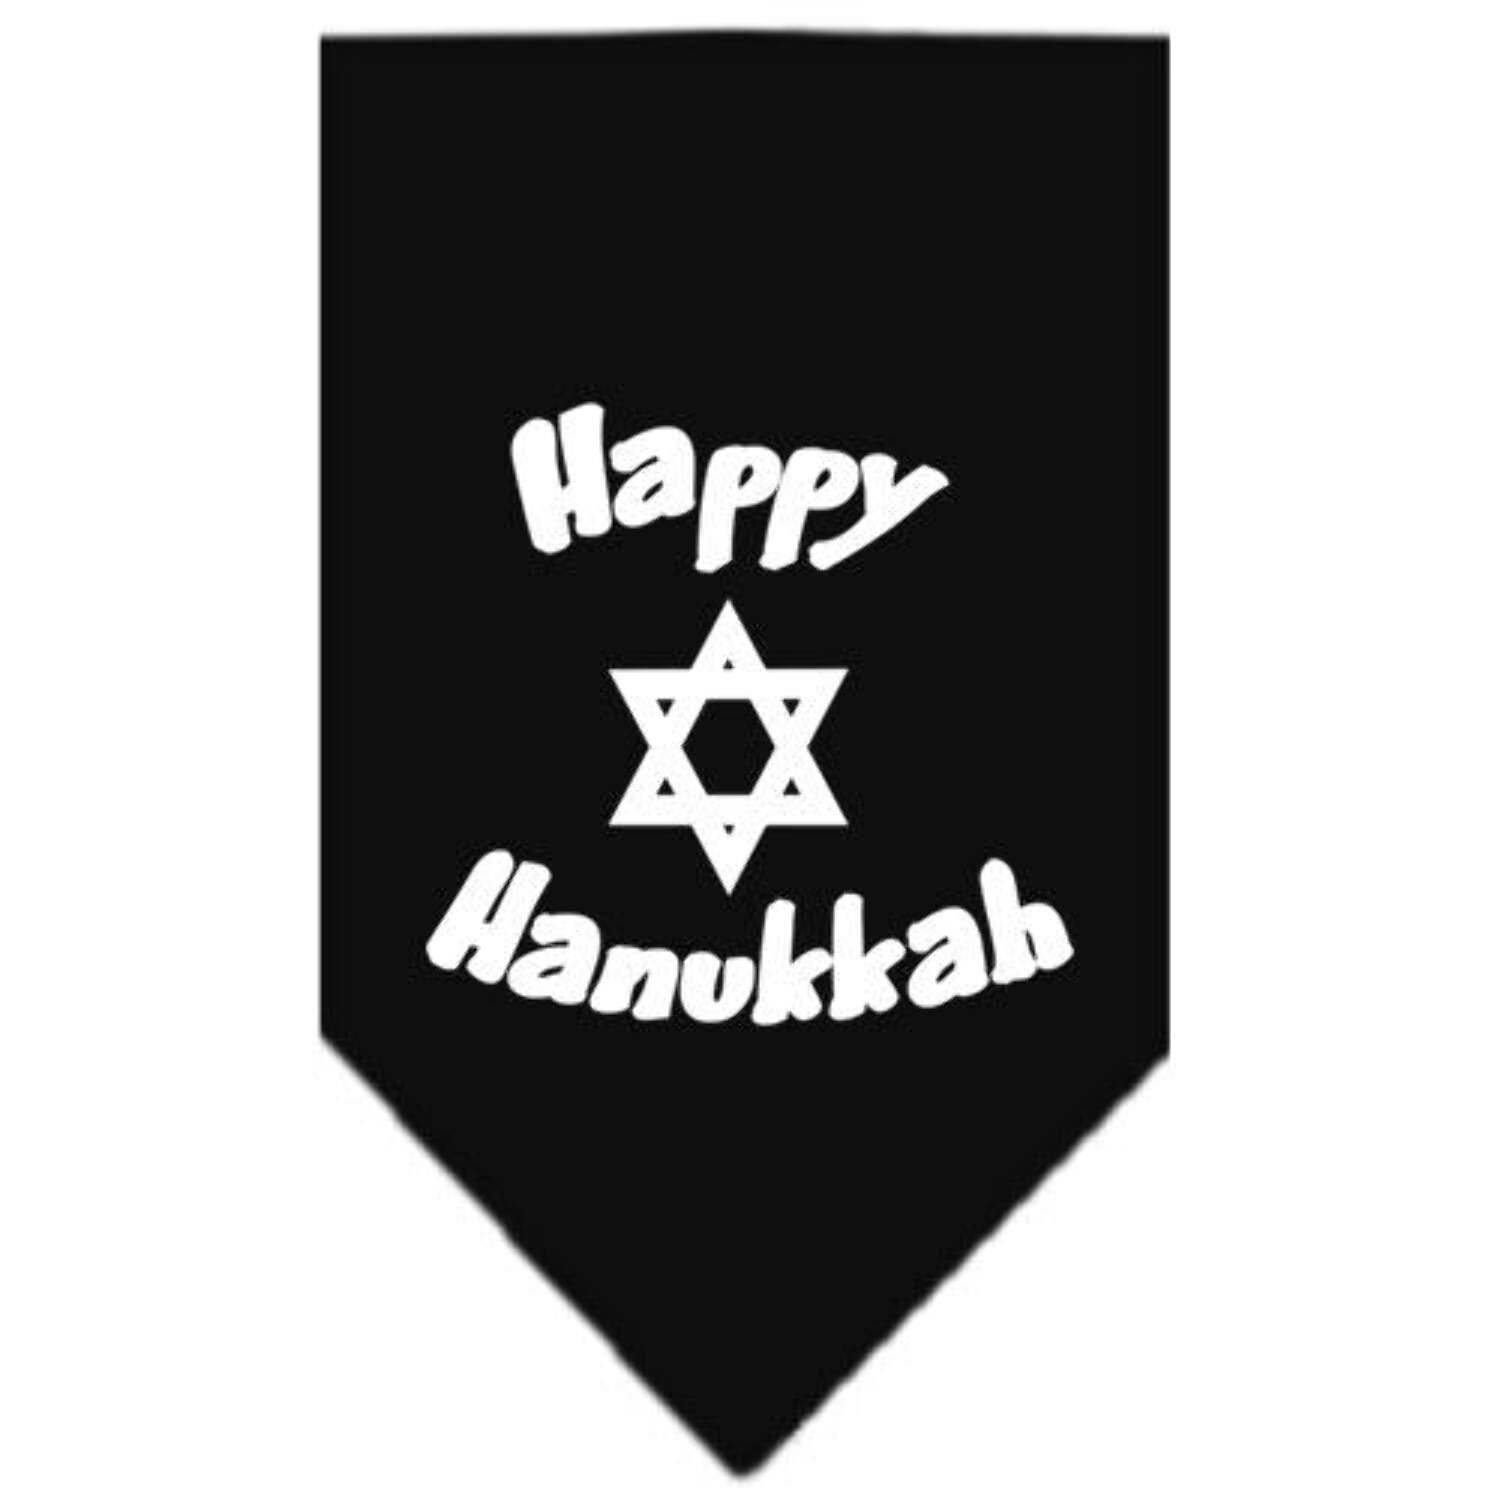 Happy Hanukkah Screen Print Bandana Navy Blue Small - image 2 of 10